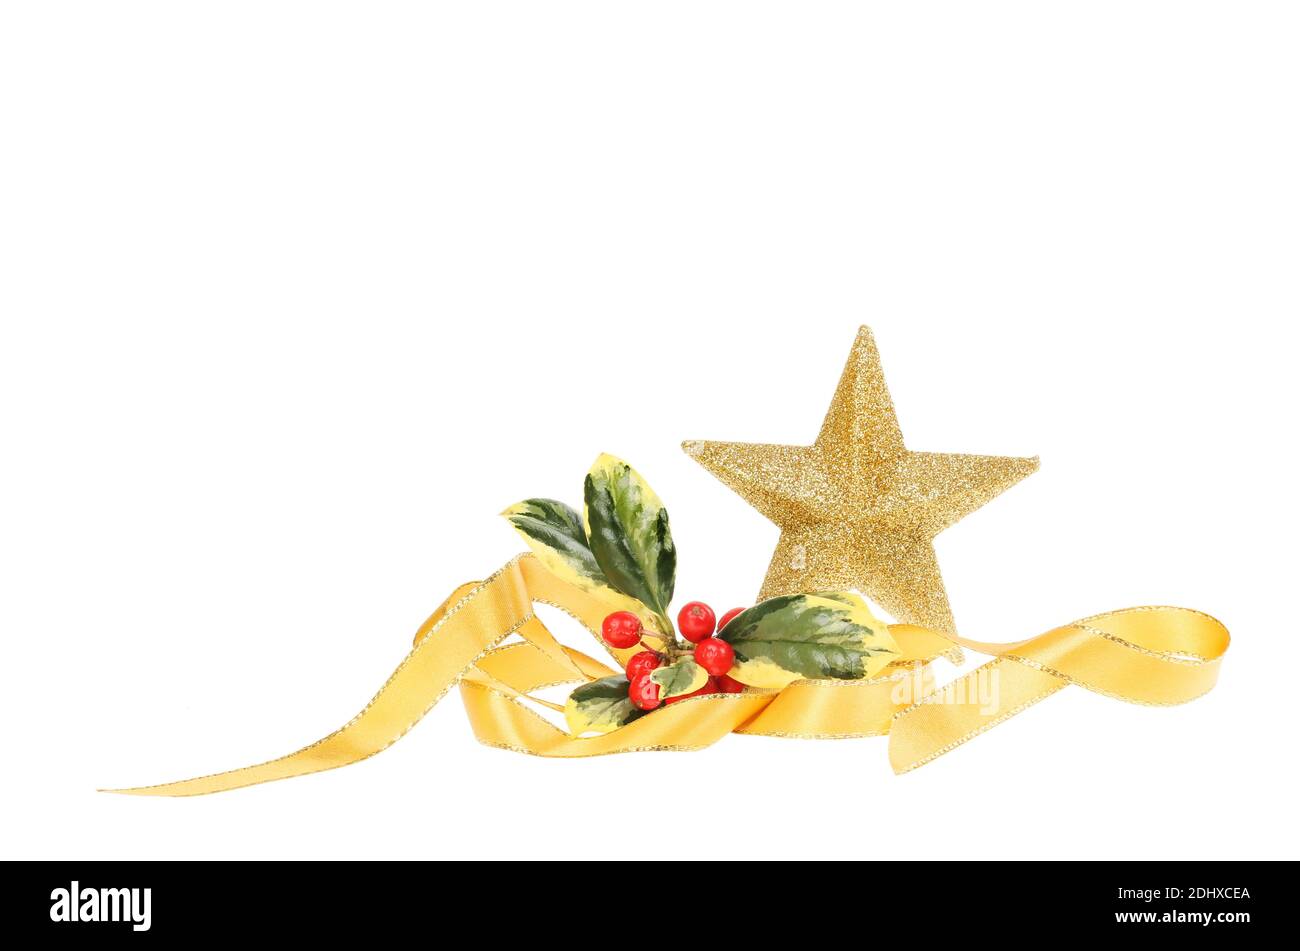 Motif de Noël, étoile dorée avec ruban doré en spirale et houx varié isolé du blanc Banque D'Images